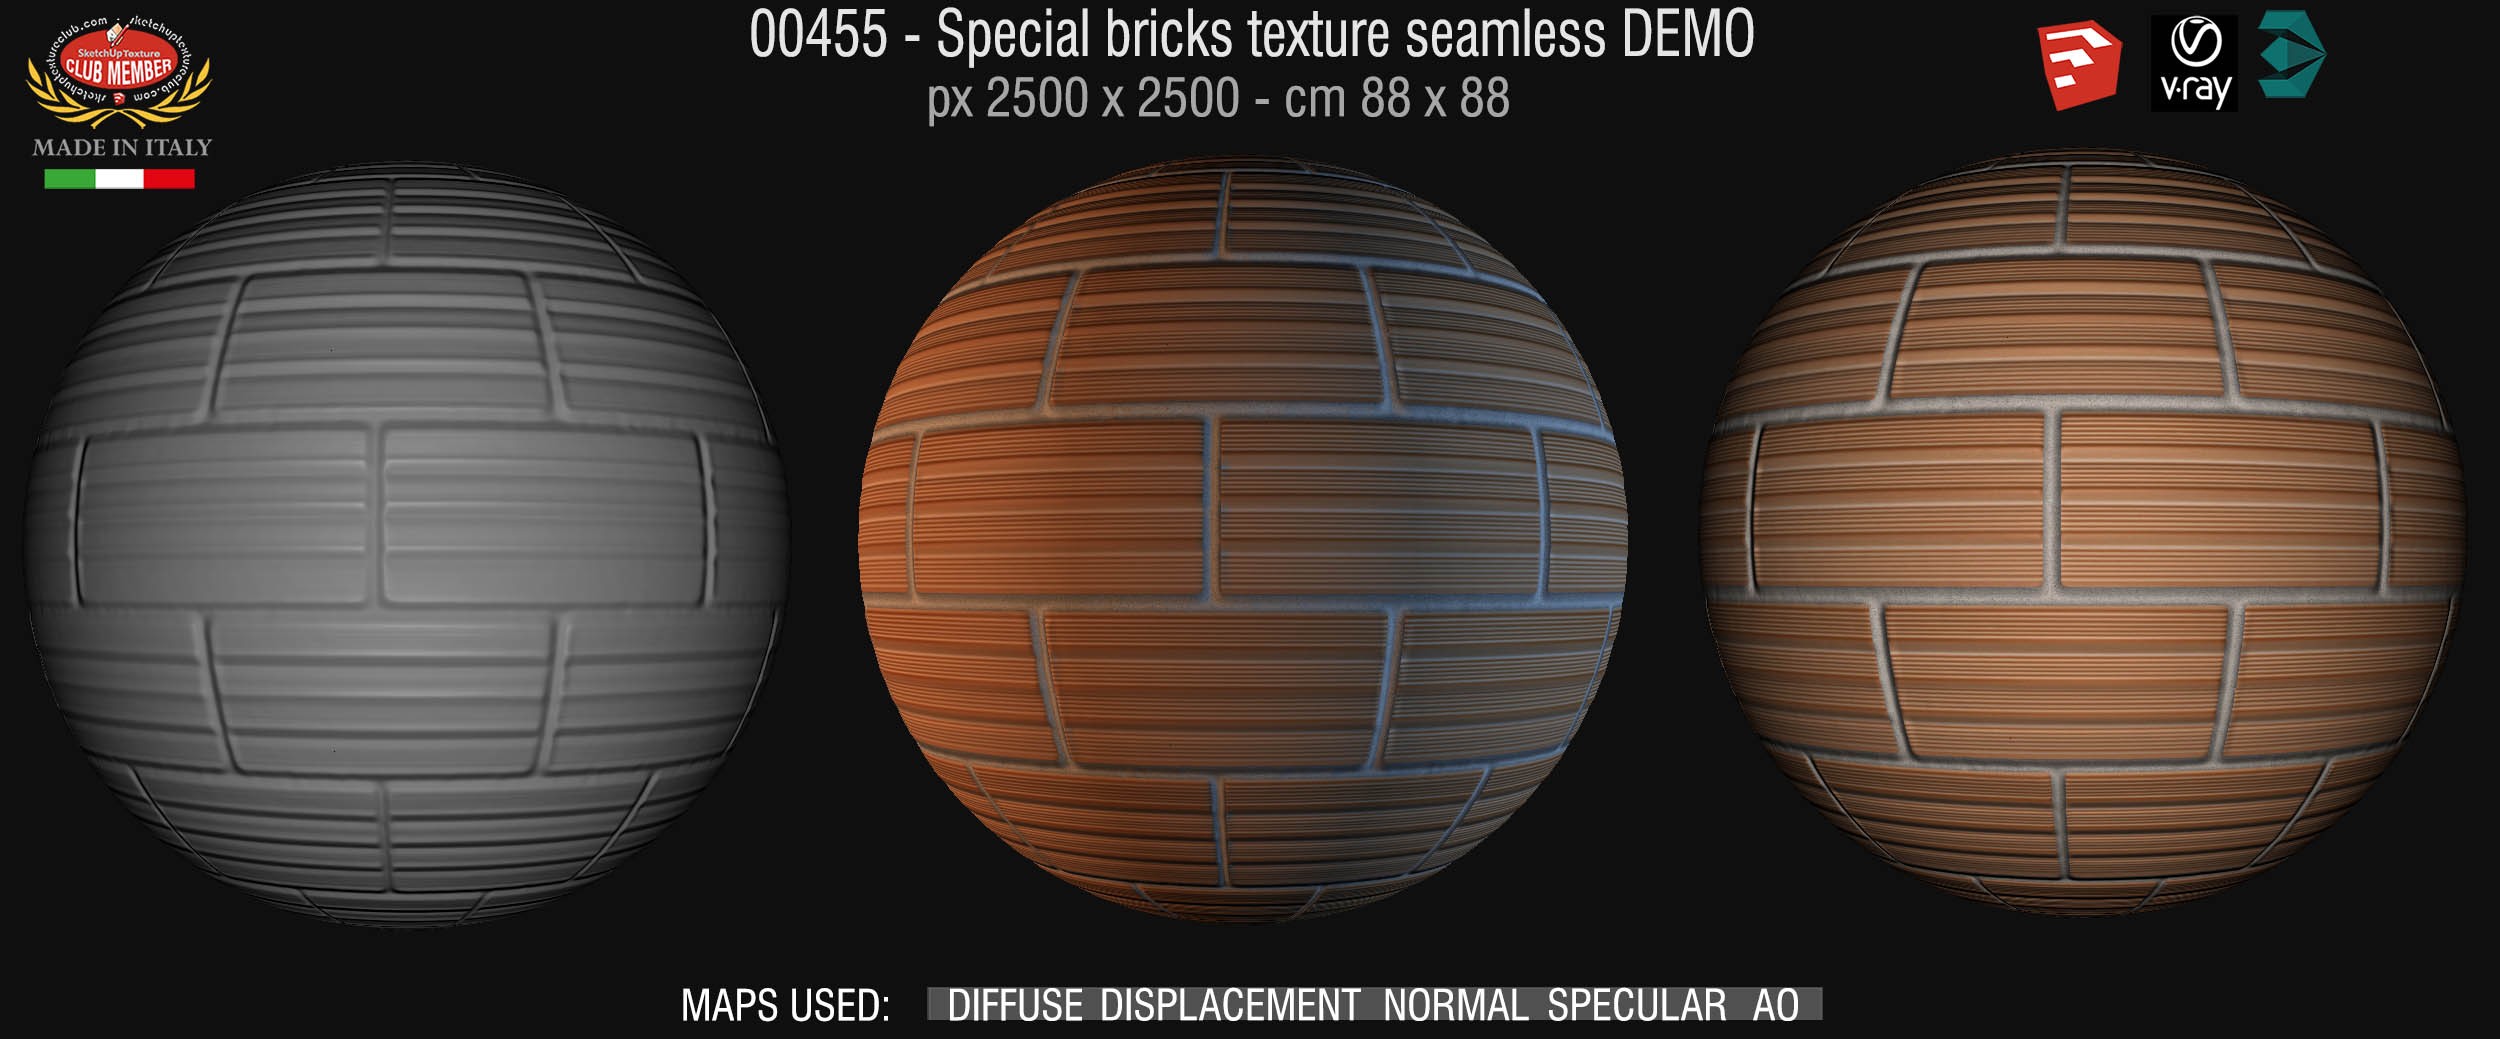 00455 Special bricks texture seamless + maps DEMO